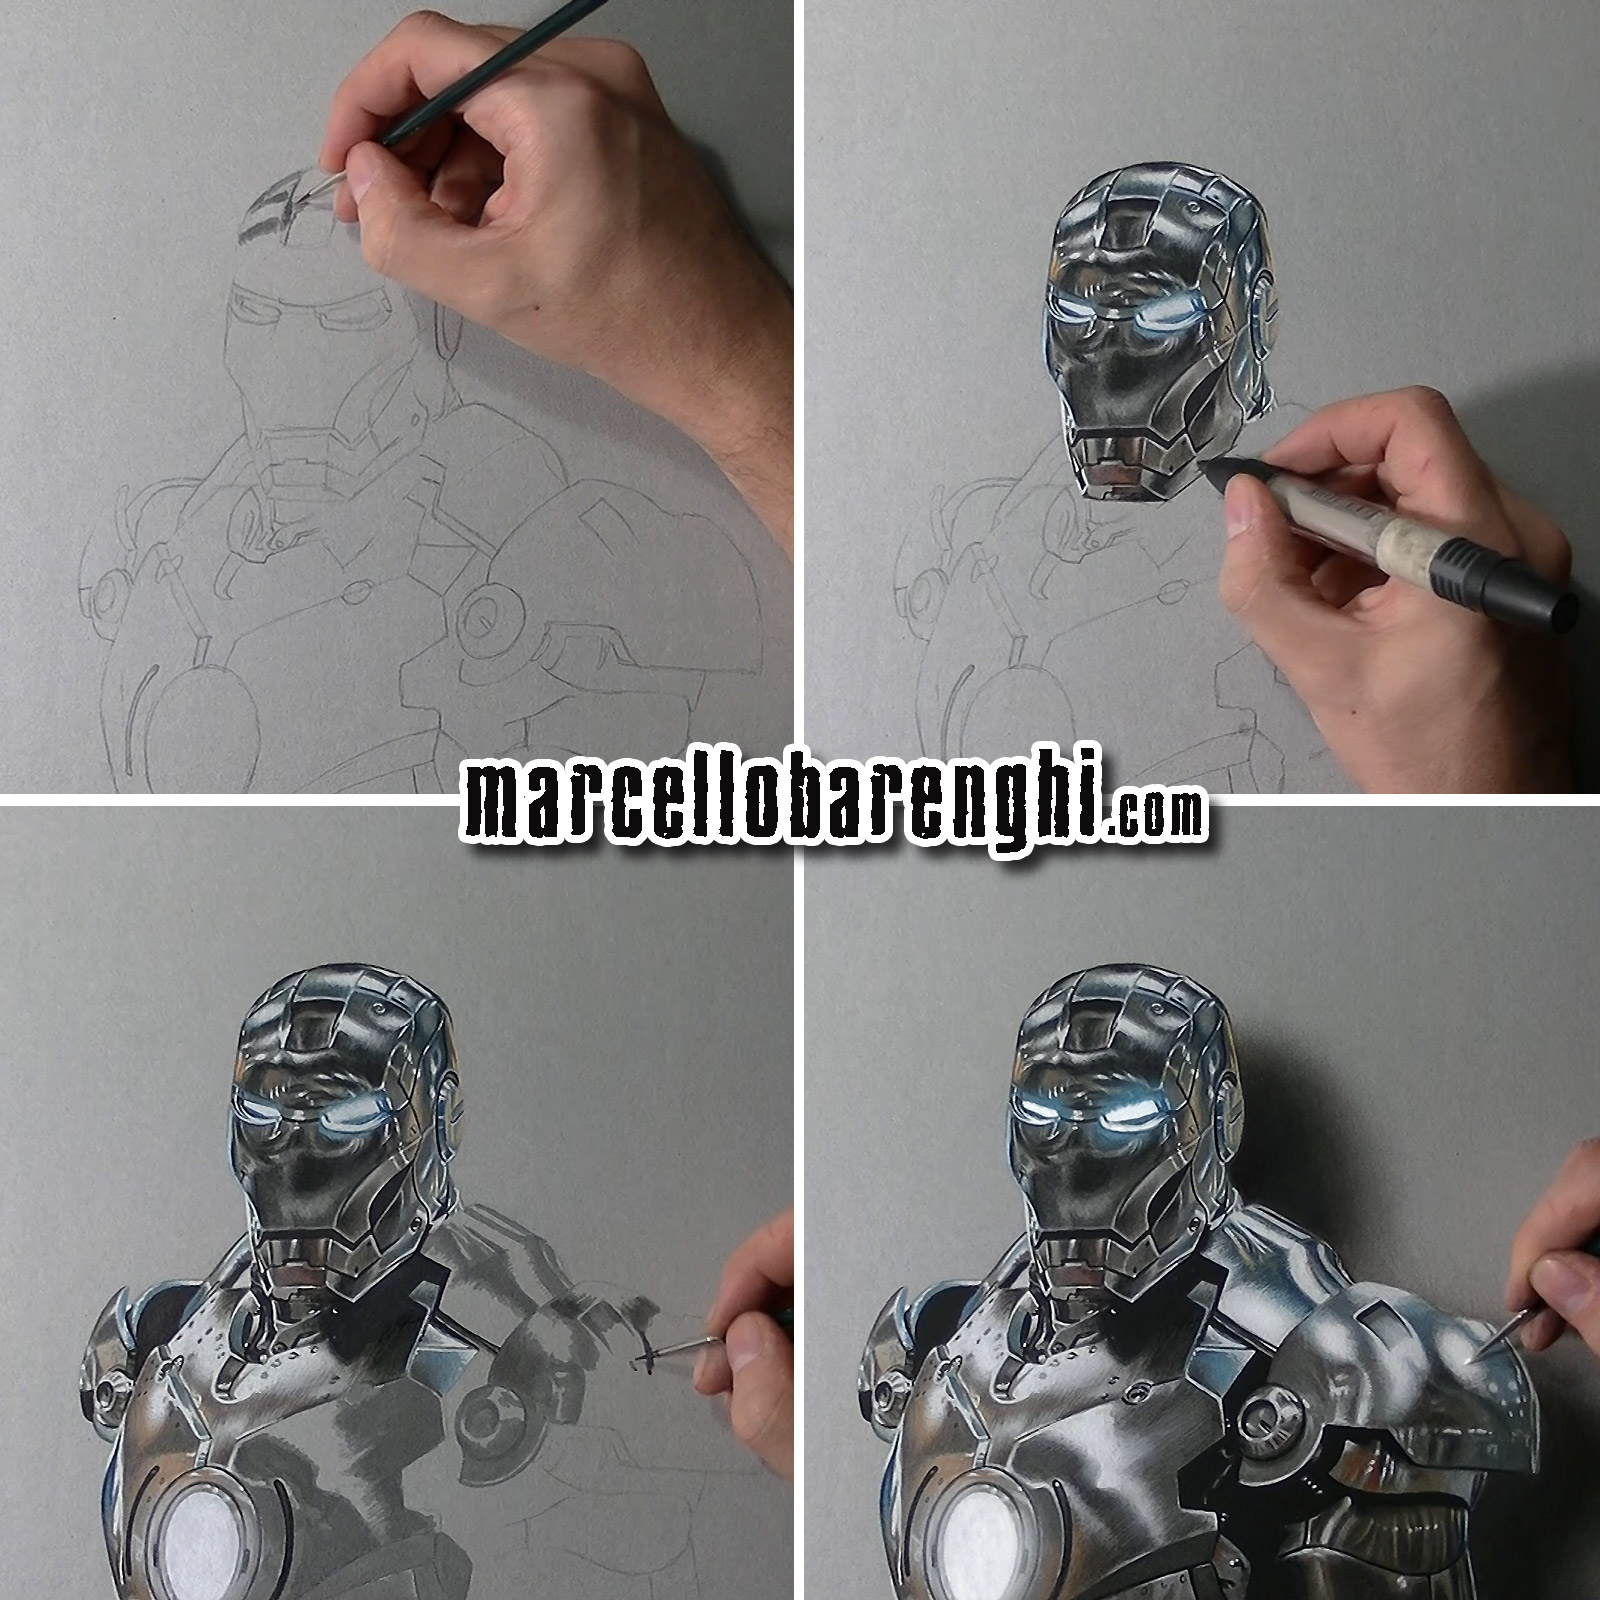 © Marcello Barenghi. Железный человек (Iron Man). Время рисования: 7 часов 17 минут